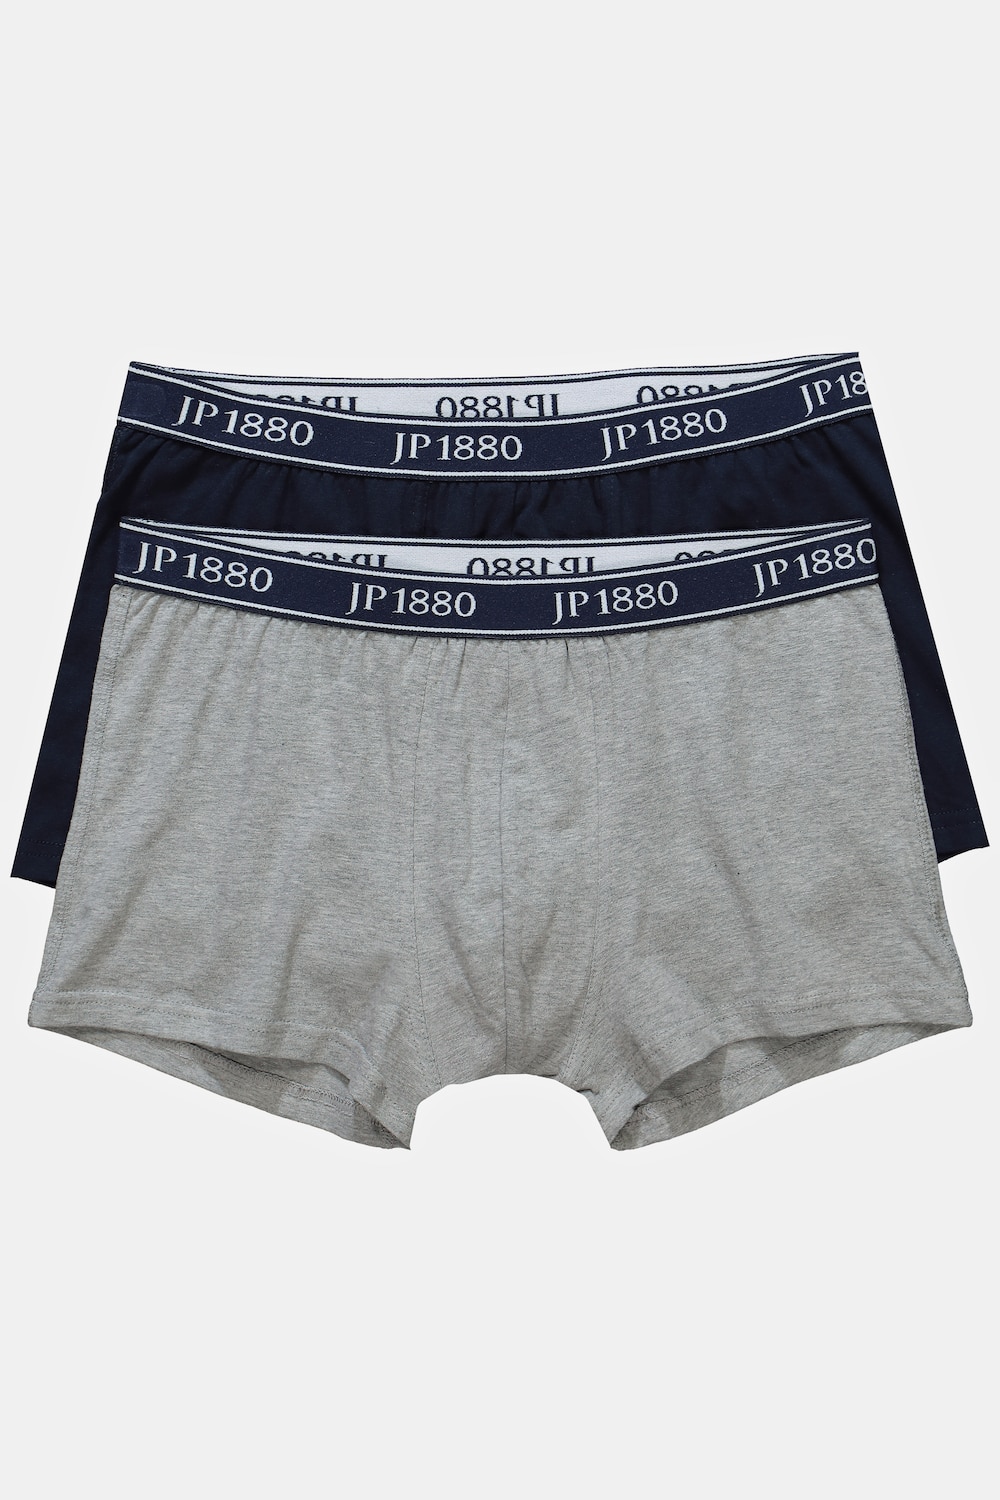 Grosse Grössen Unterhosen, Herren, blau, Größe: 14, Baumwolle, JP1880